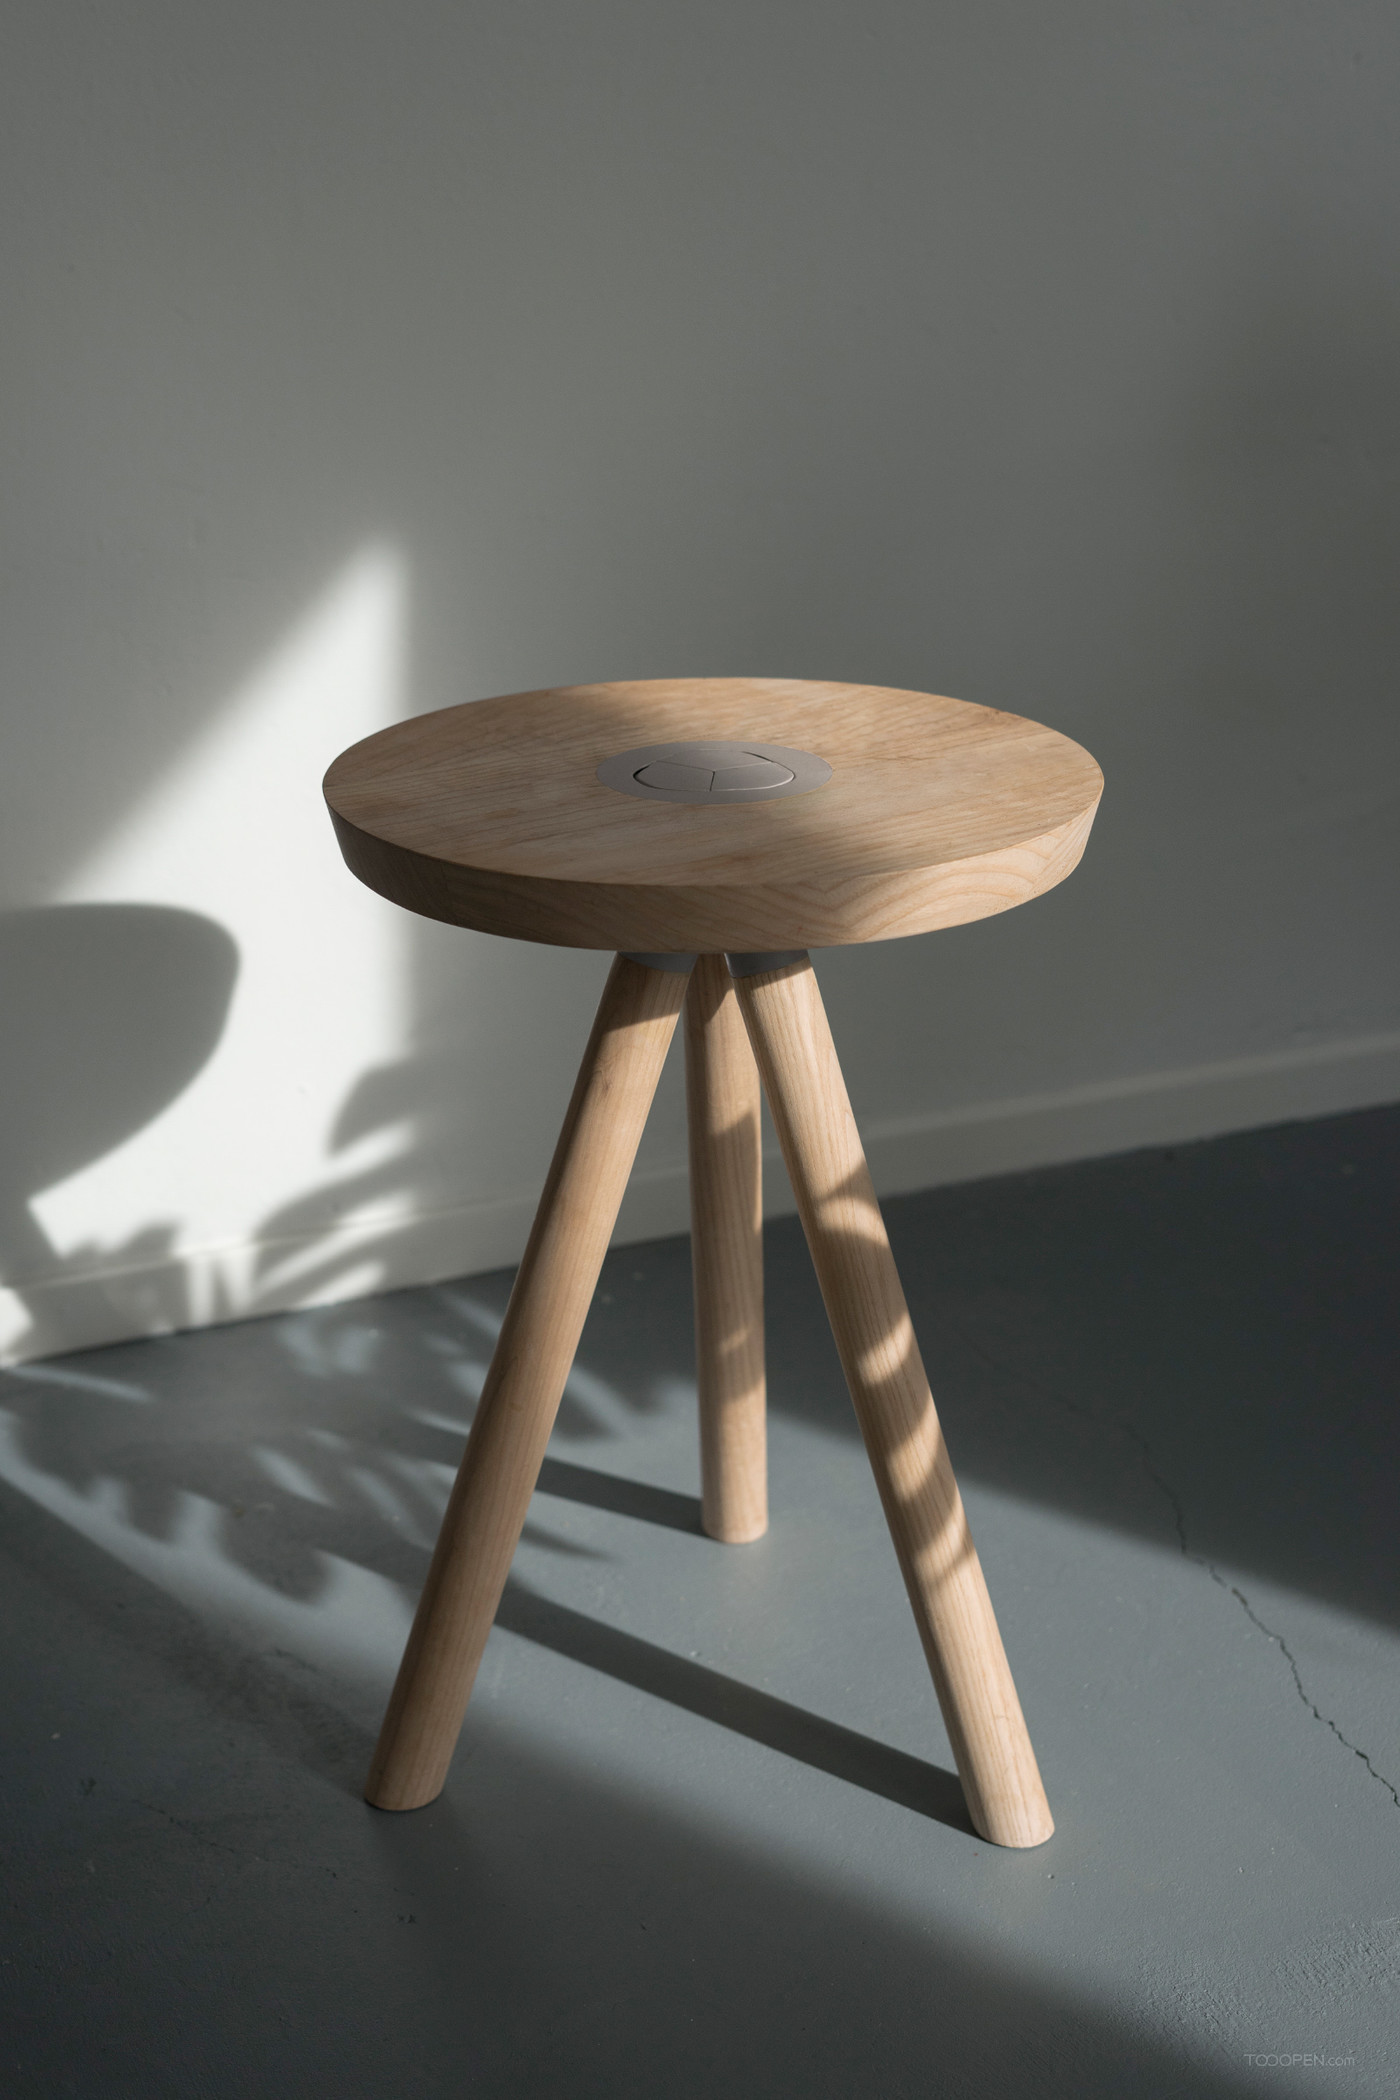 简易易组装桌凳家具设计作品欣赏-09